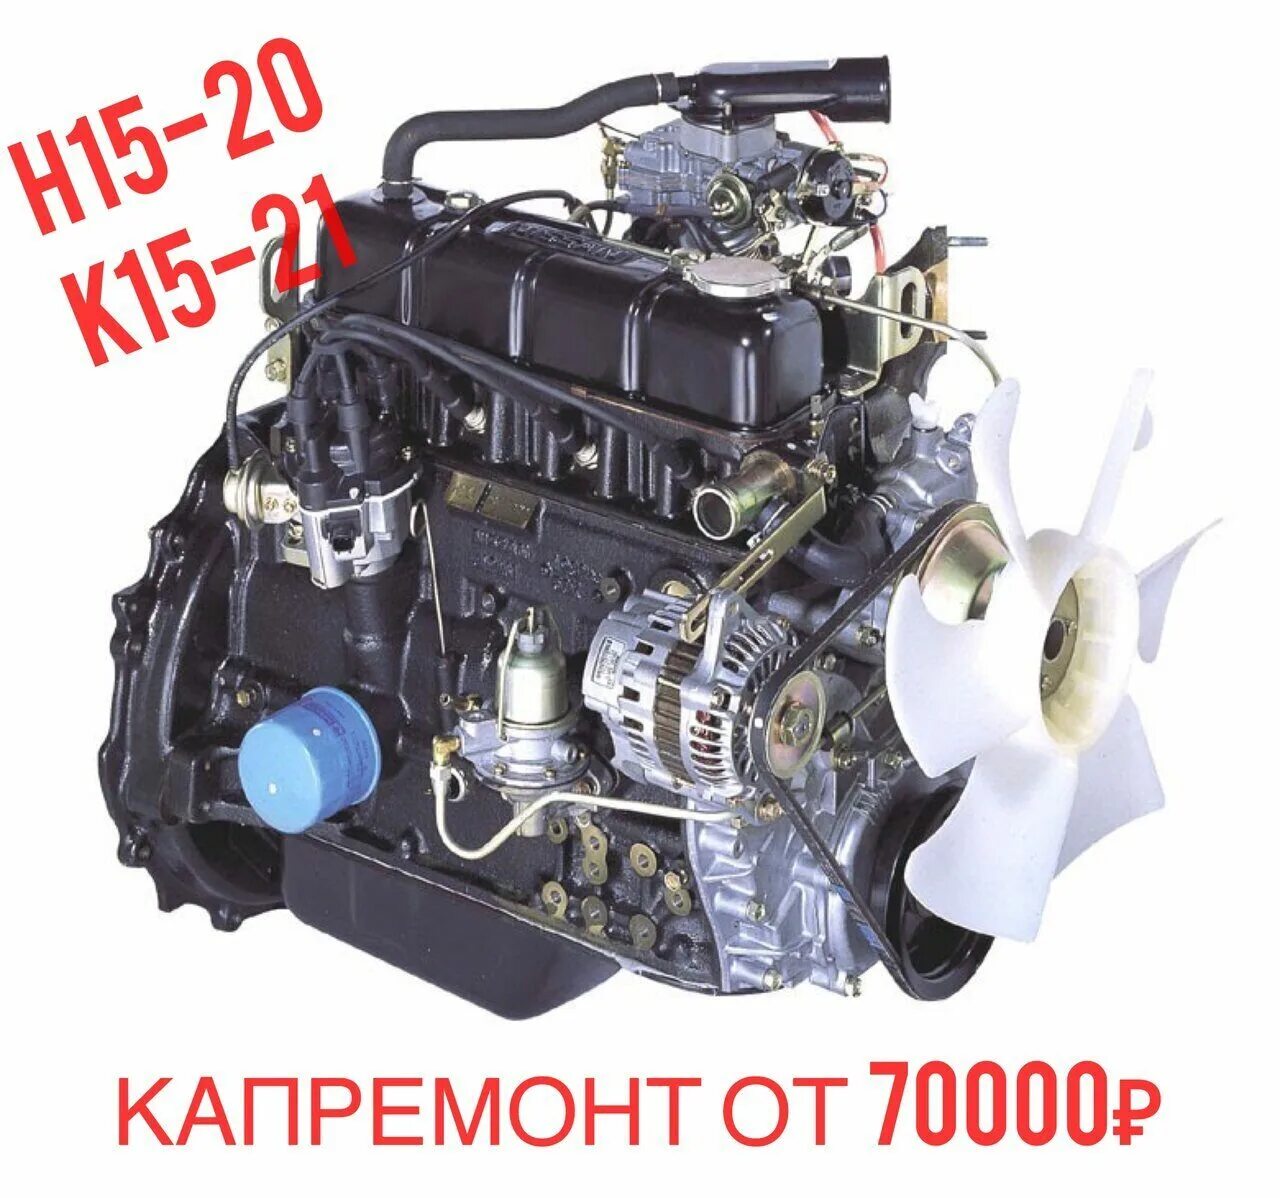 Двигатель h20 Nissan. Nissan k15 двигатель. Двигатель Nissan k15 для вилочного погрузчика. Двигатель Ниссан н20 погрузчик.